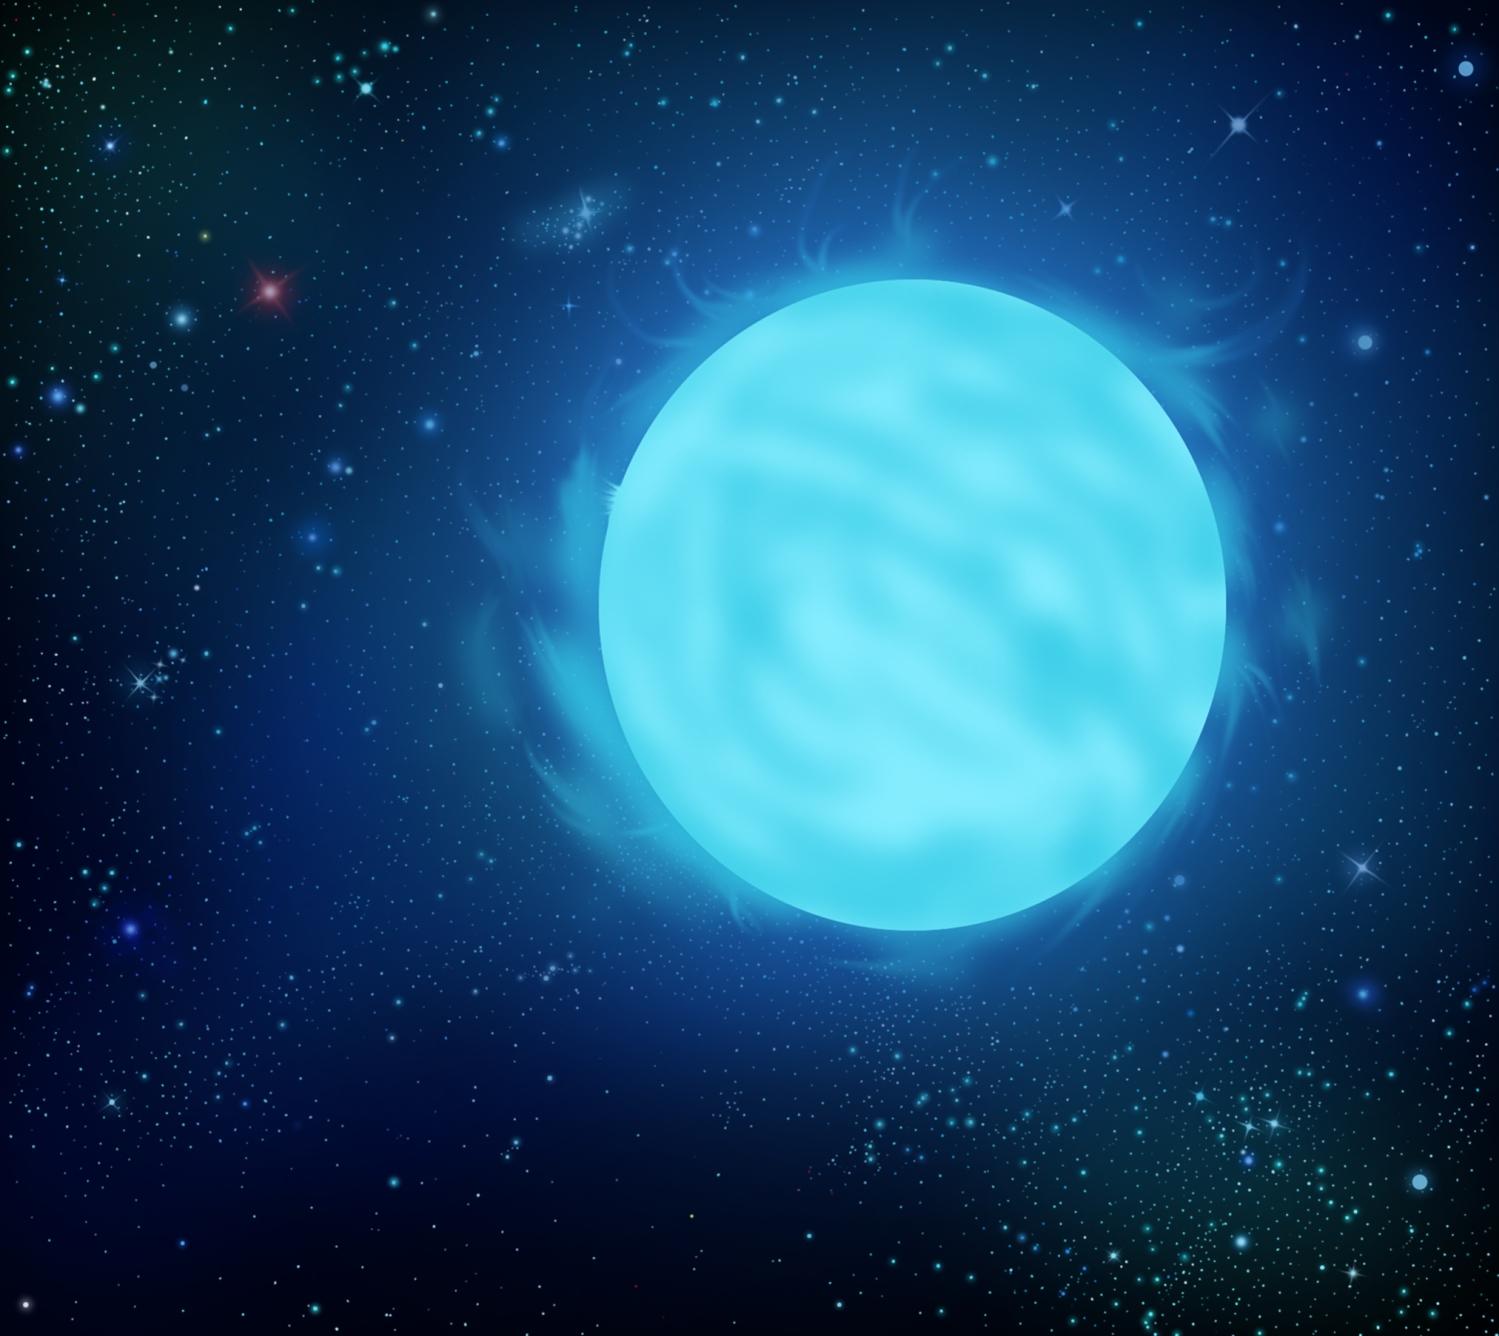 Fantáziarajz az R136a1 katalógusjelű kék hiperóriásról, az ismert világegyetem legnagyobb tömegű csillagáról